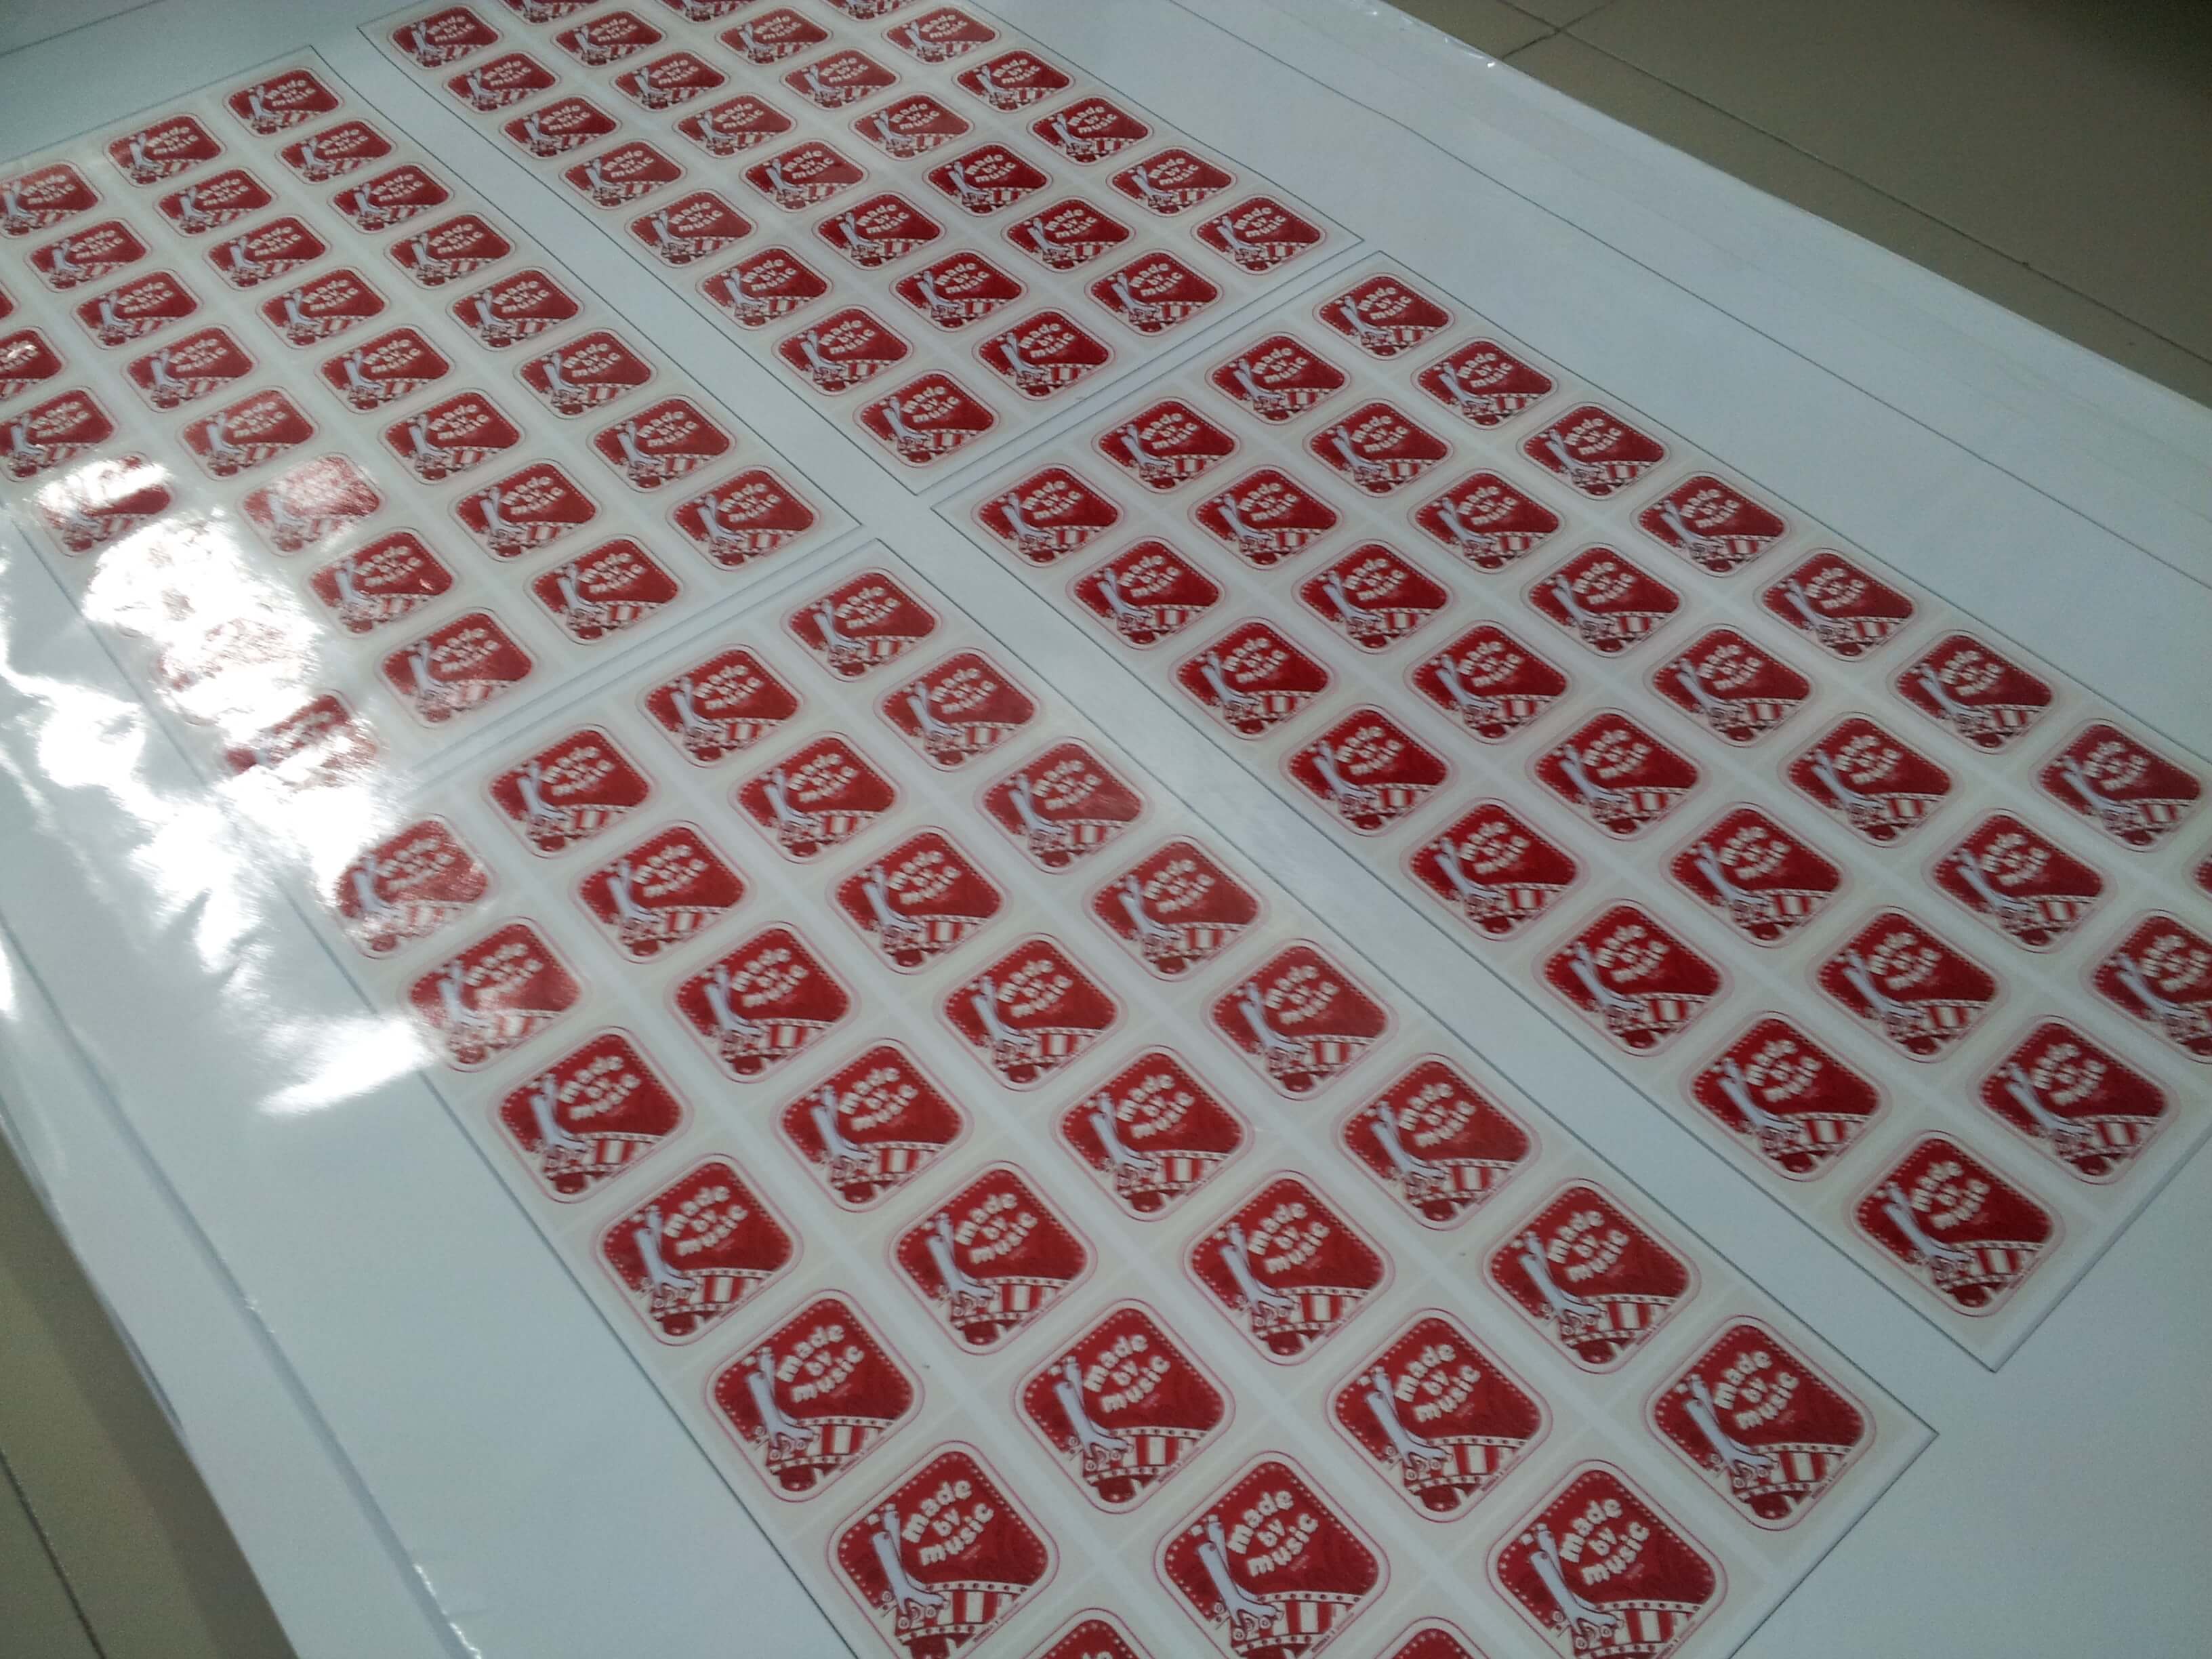 In Decal nước làm tem nhãn dán tuyệt đẹp, in ấn chất lượng cao, giá rẻ ngay với DVQuangCao